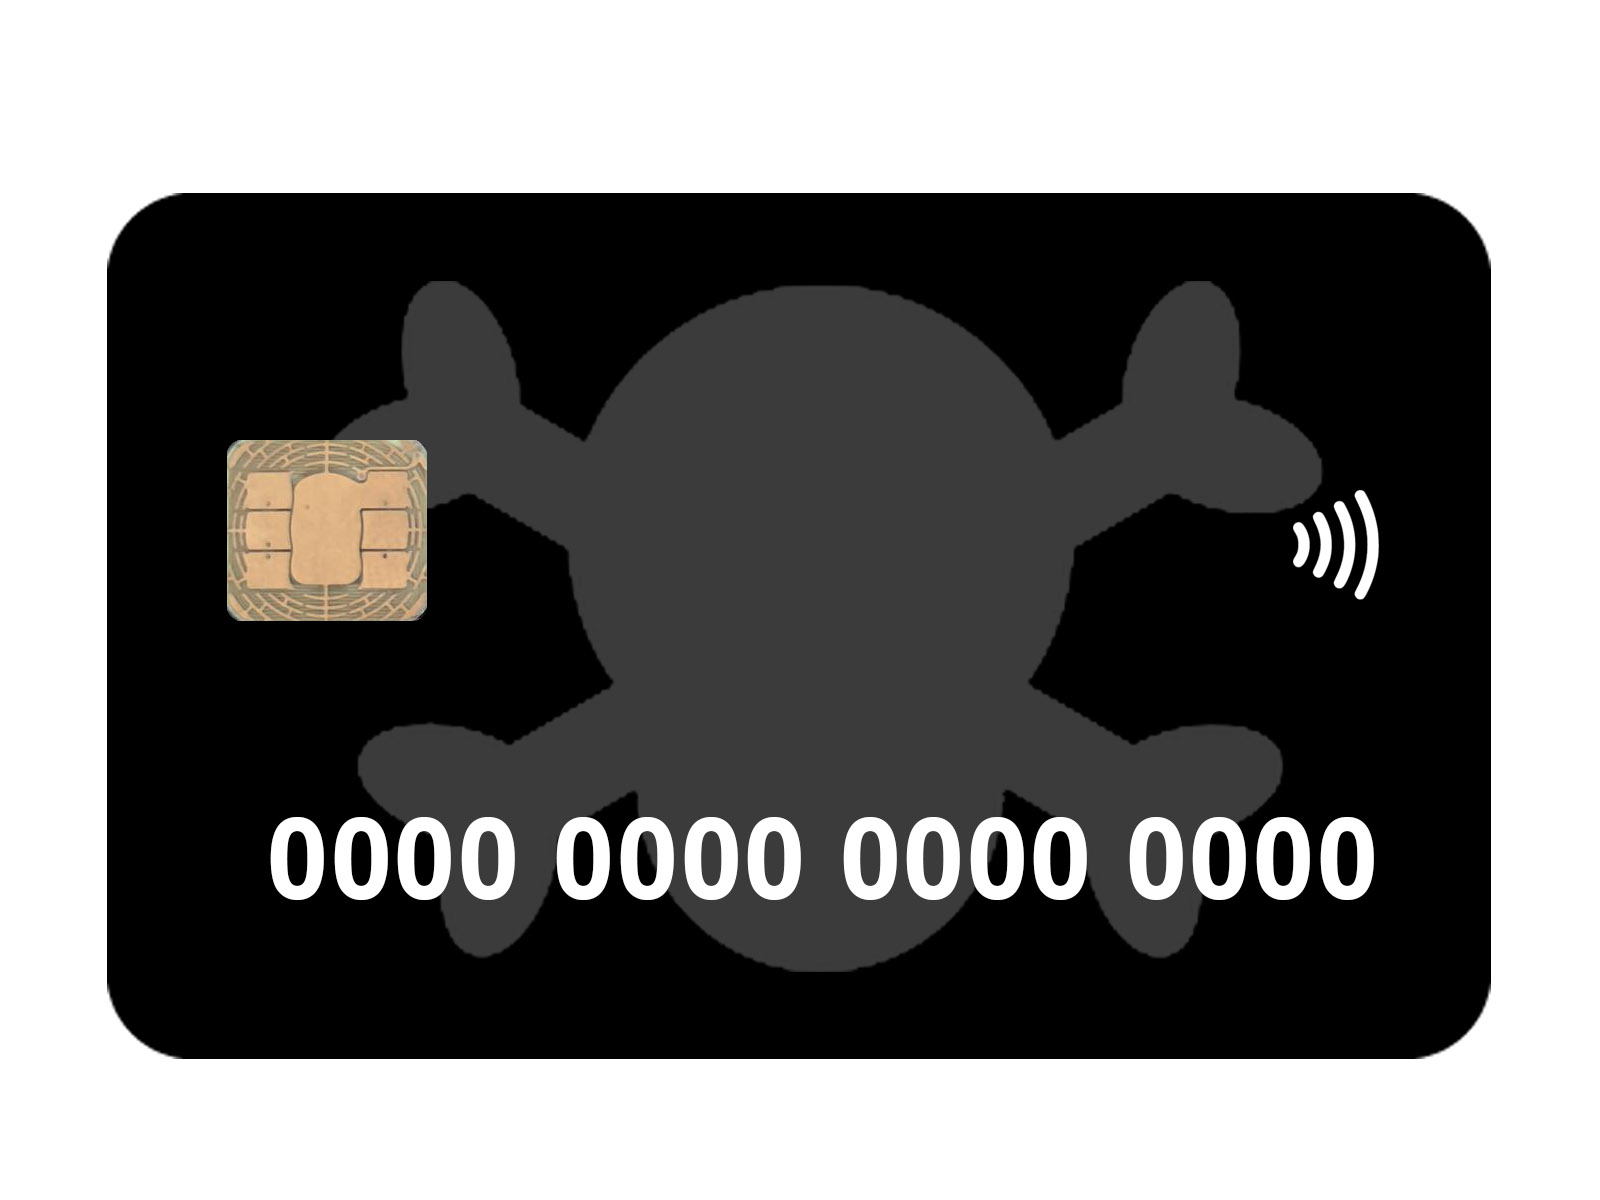 شرح موقع saijeorge الحصول على بطاقات فيزا وهمية مجانا